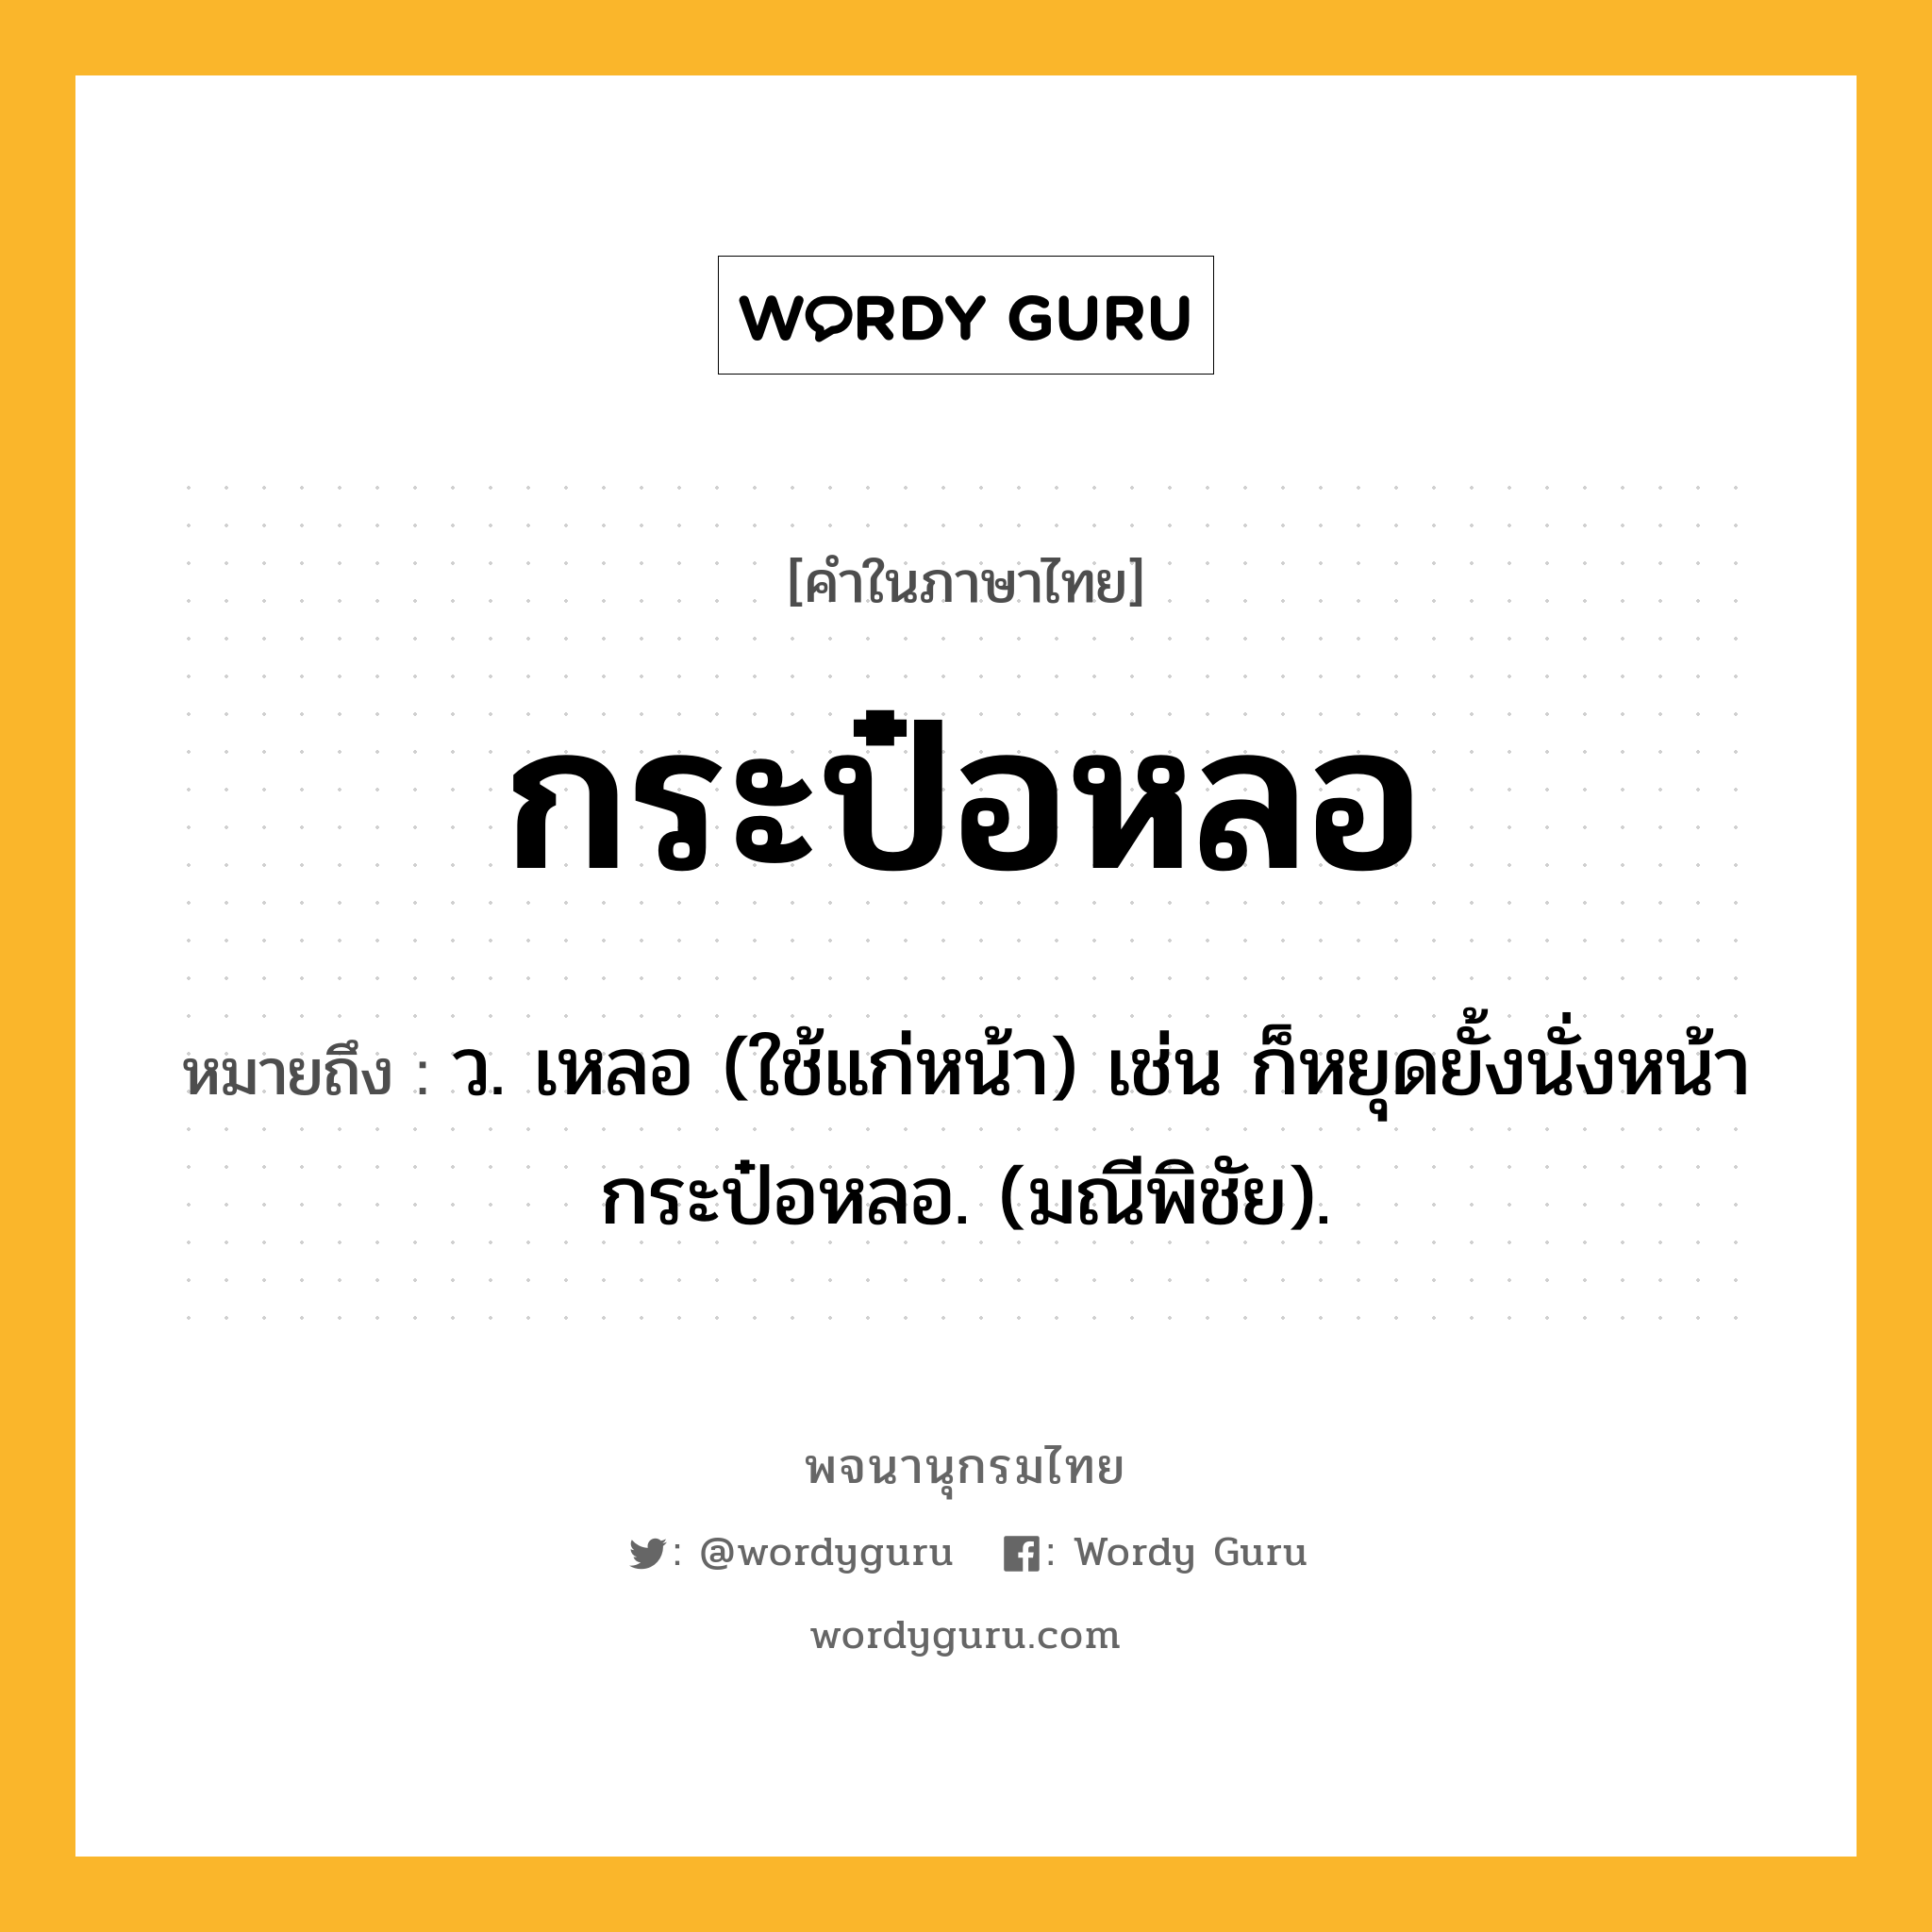 กระป๋อหลอ ความหมาย หมายถึงอะไร?, คำในภาษาไทย กระป๋อหลอ หมายถึง ว. เหลอ (ใช้แก่หน้า) เช่น ก็หยุดยั้งนั่งหน้ากระป๋อหลอ. (มณีพิชัย).